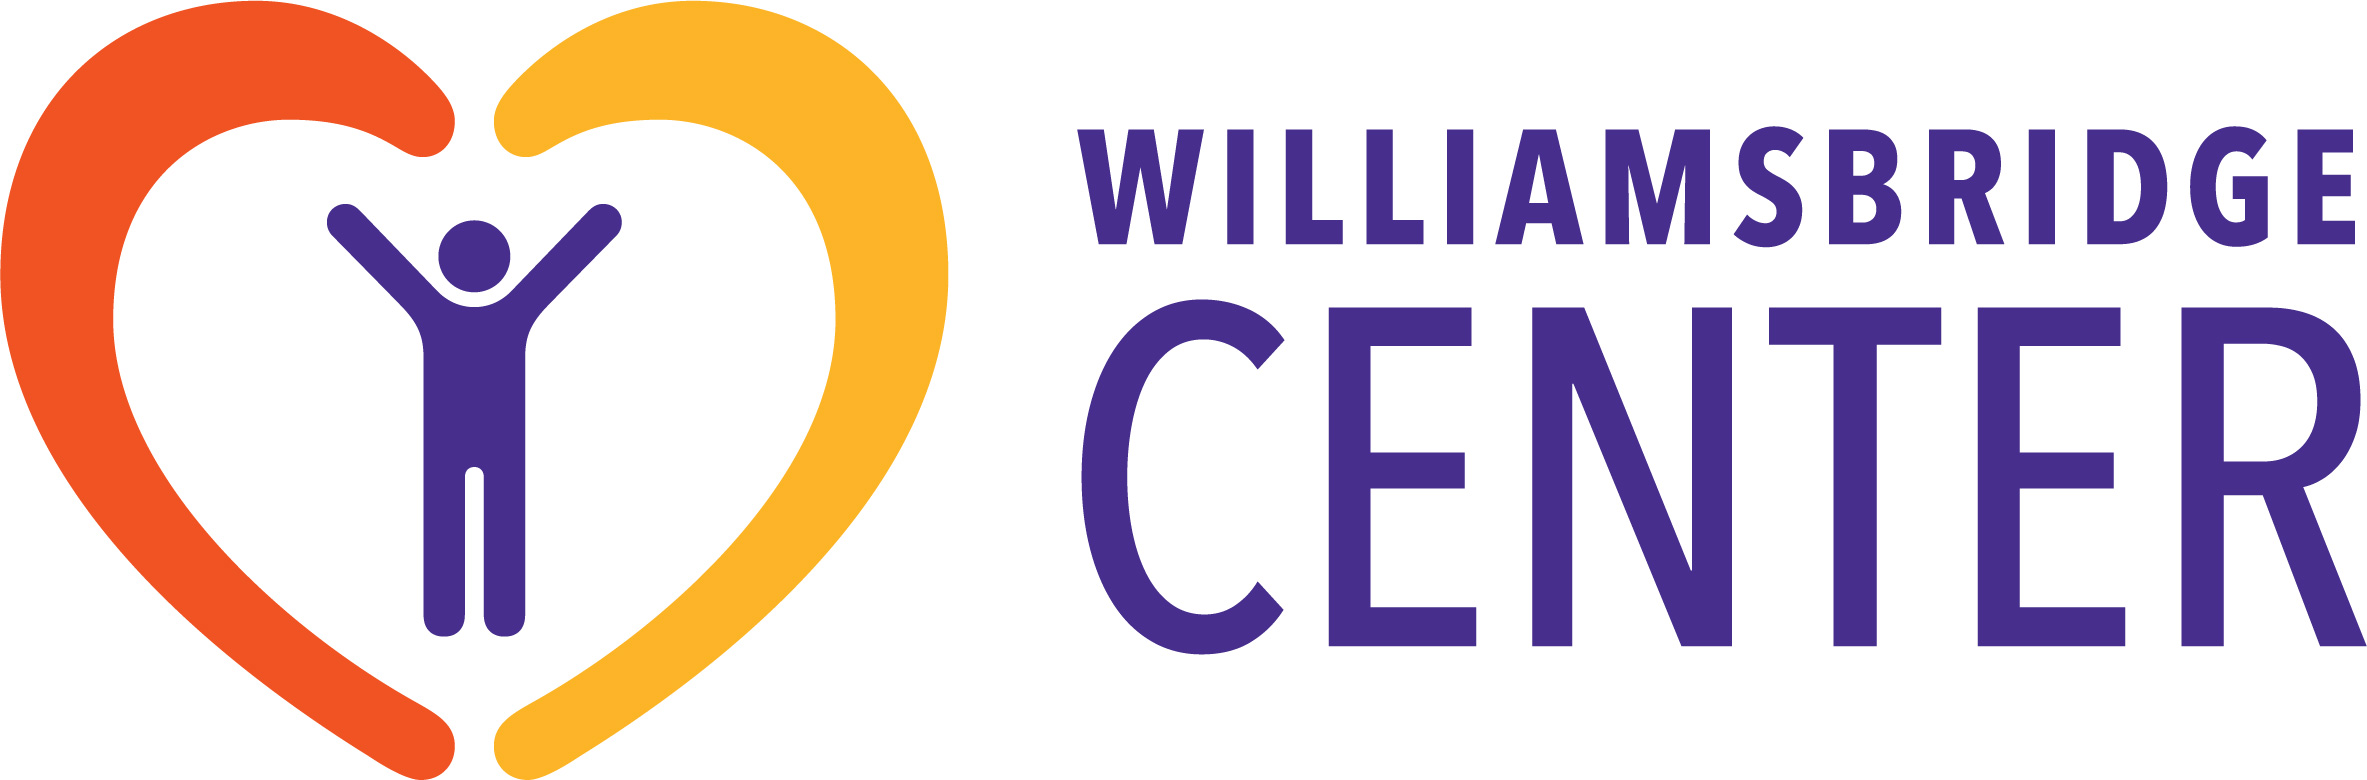 Williamsbridge Center logo